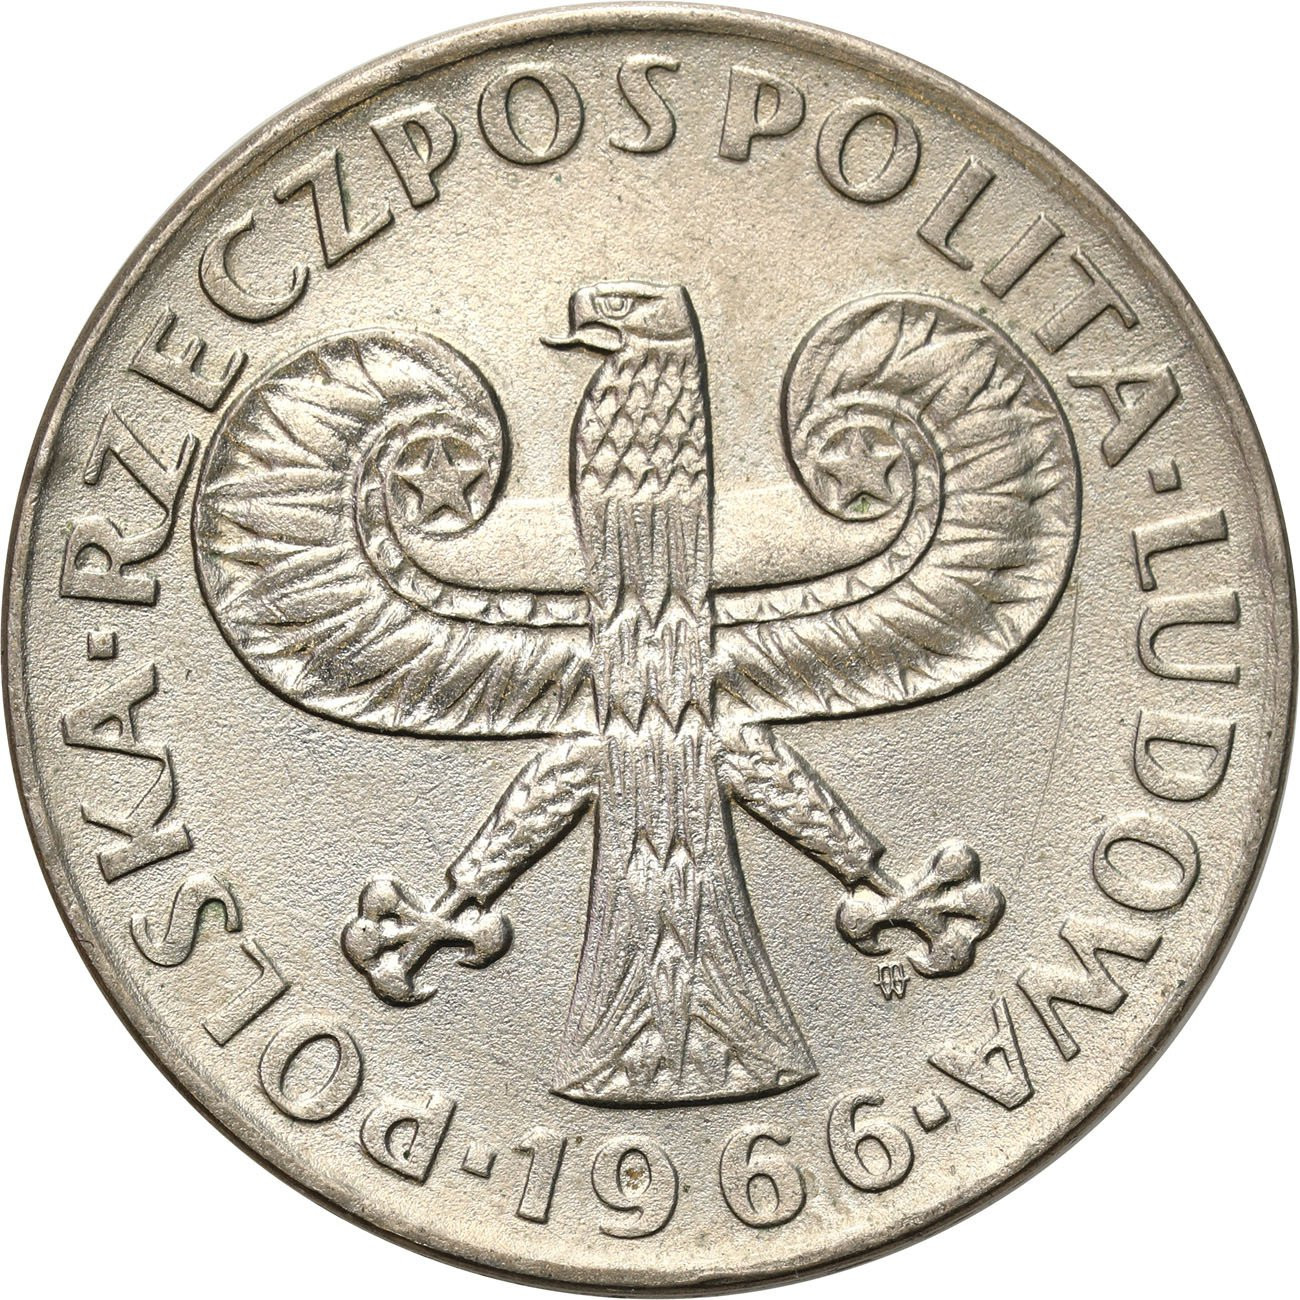 10 złotych 1966 mała kolumna